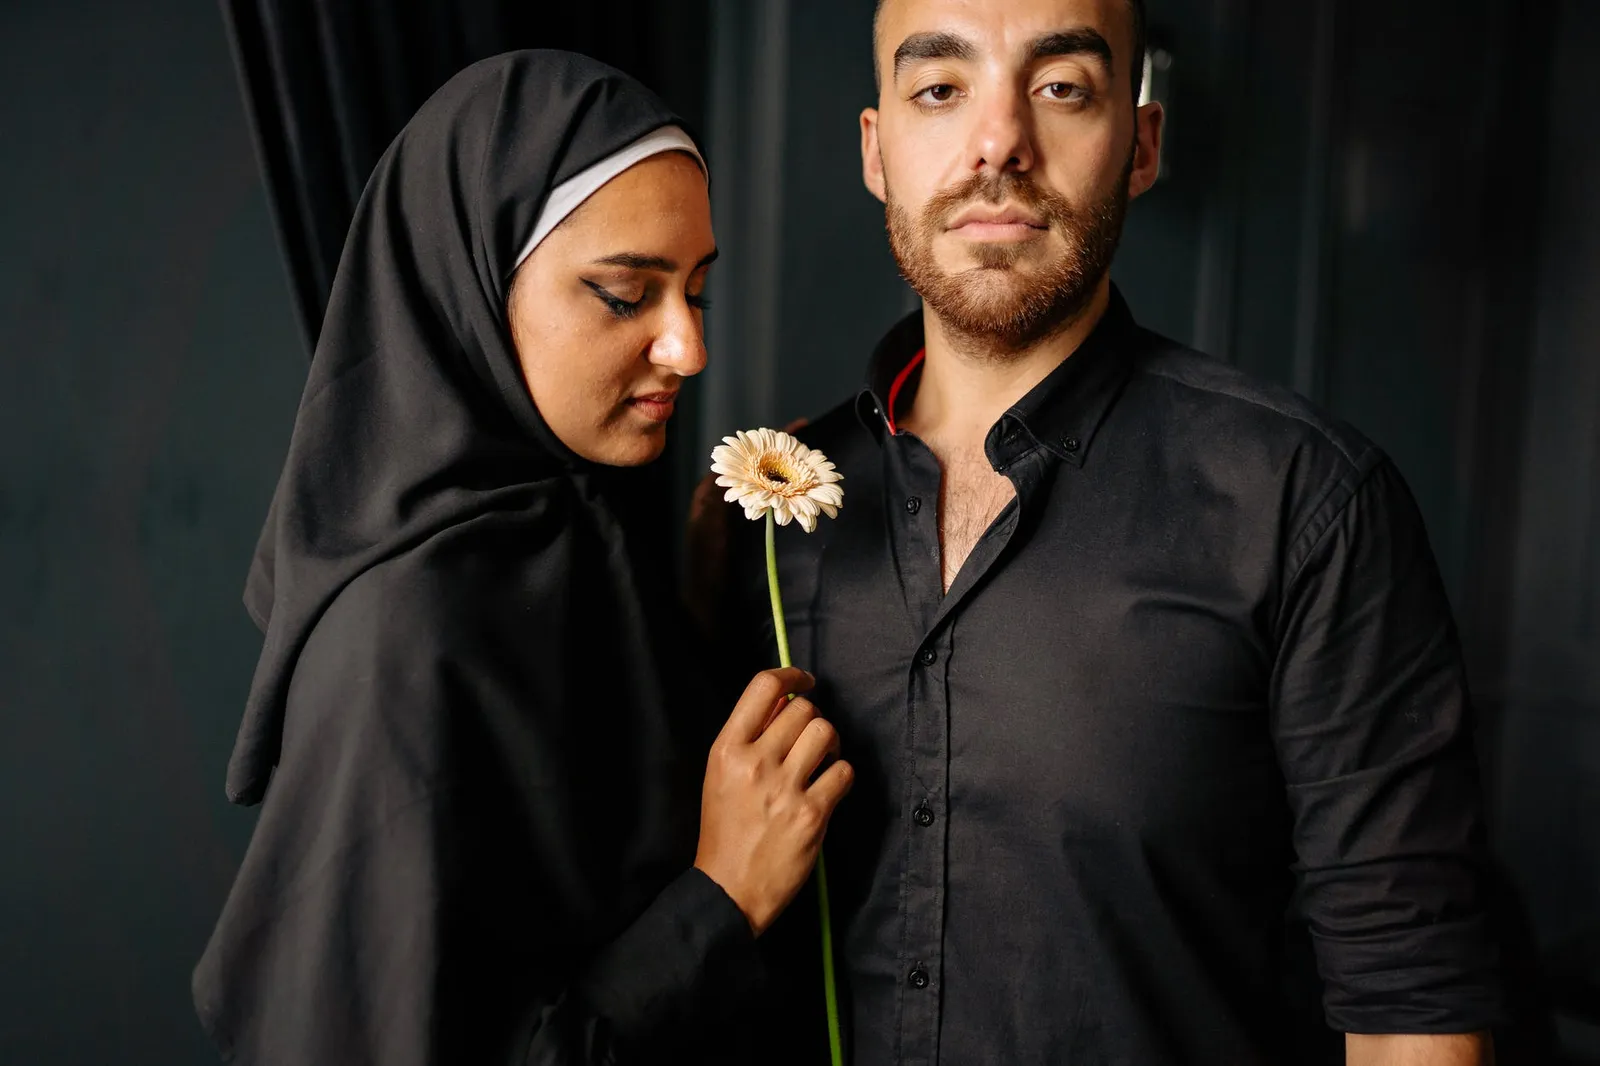 Ketika Suami Lakukan KDRT, Haruskah Istri Diam? Ini Menurut Islam